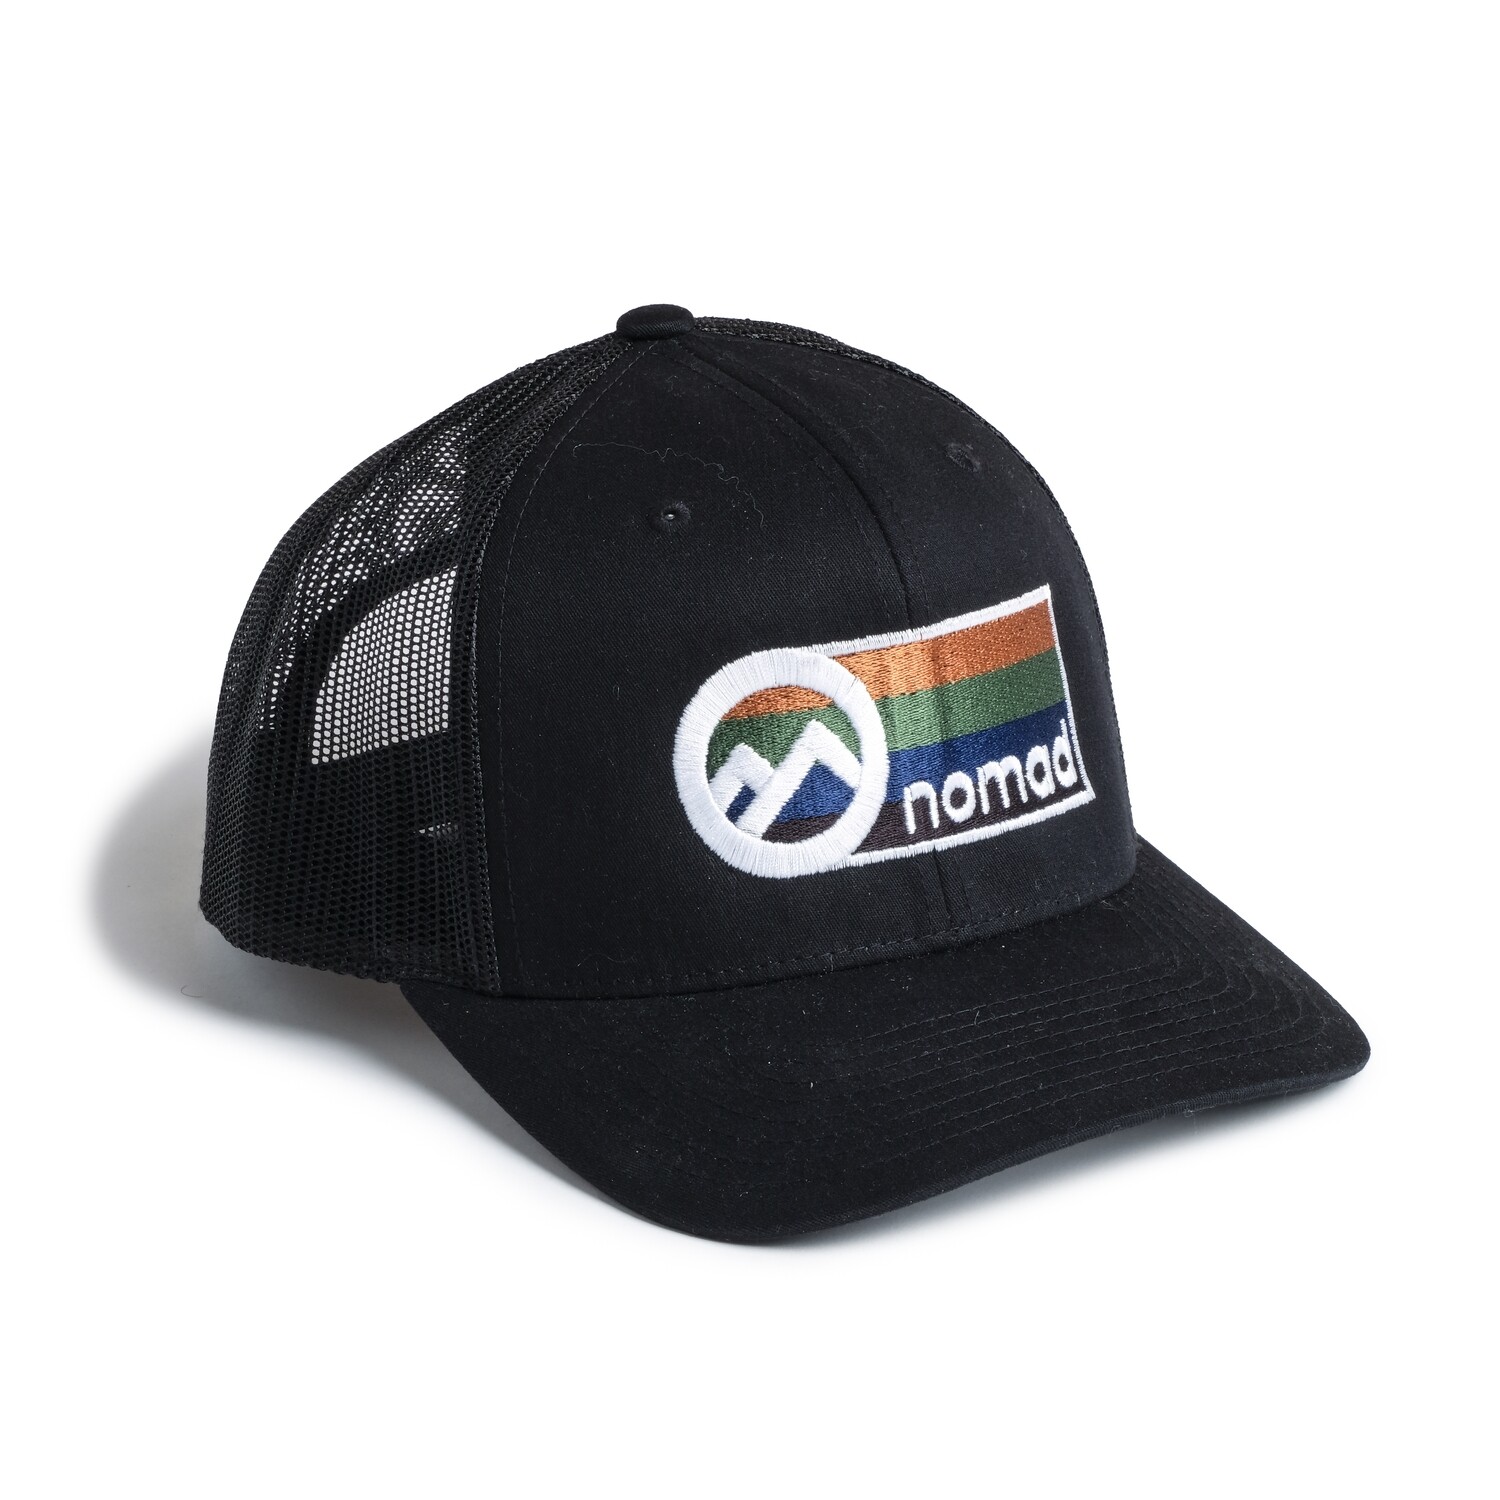 Nomad Black Mesh Hat w/ Color Logo